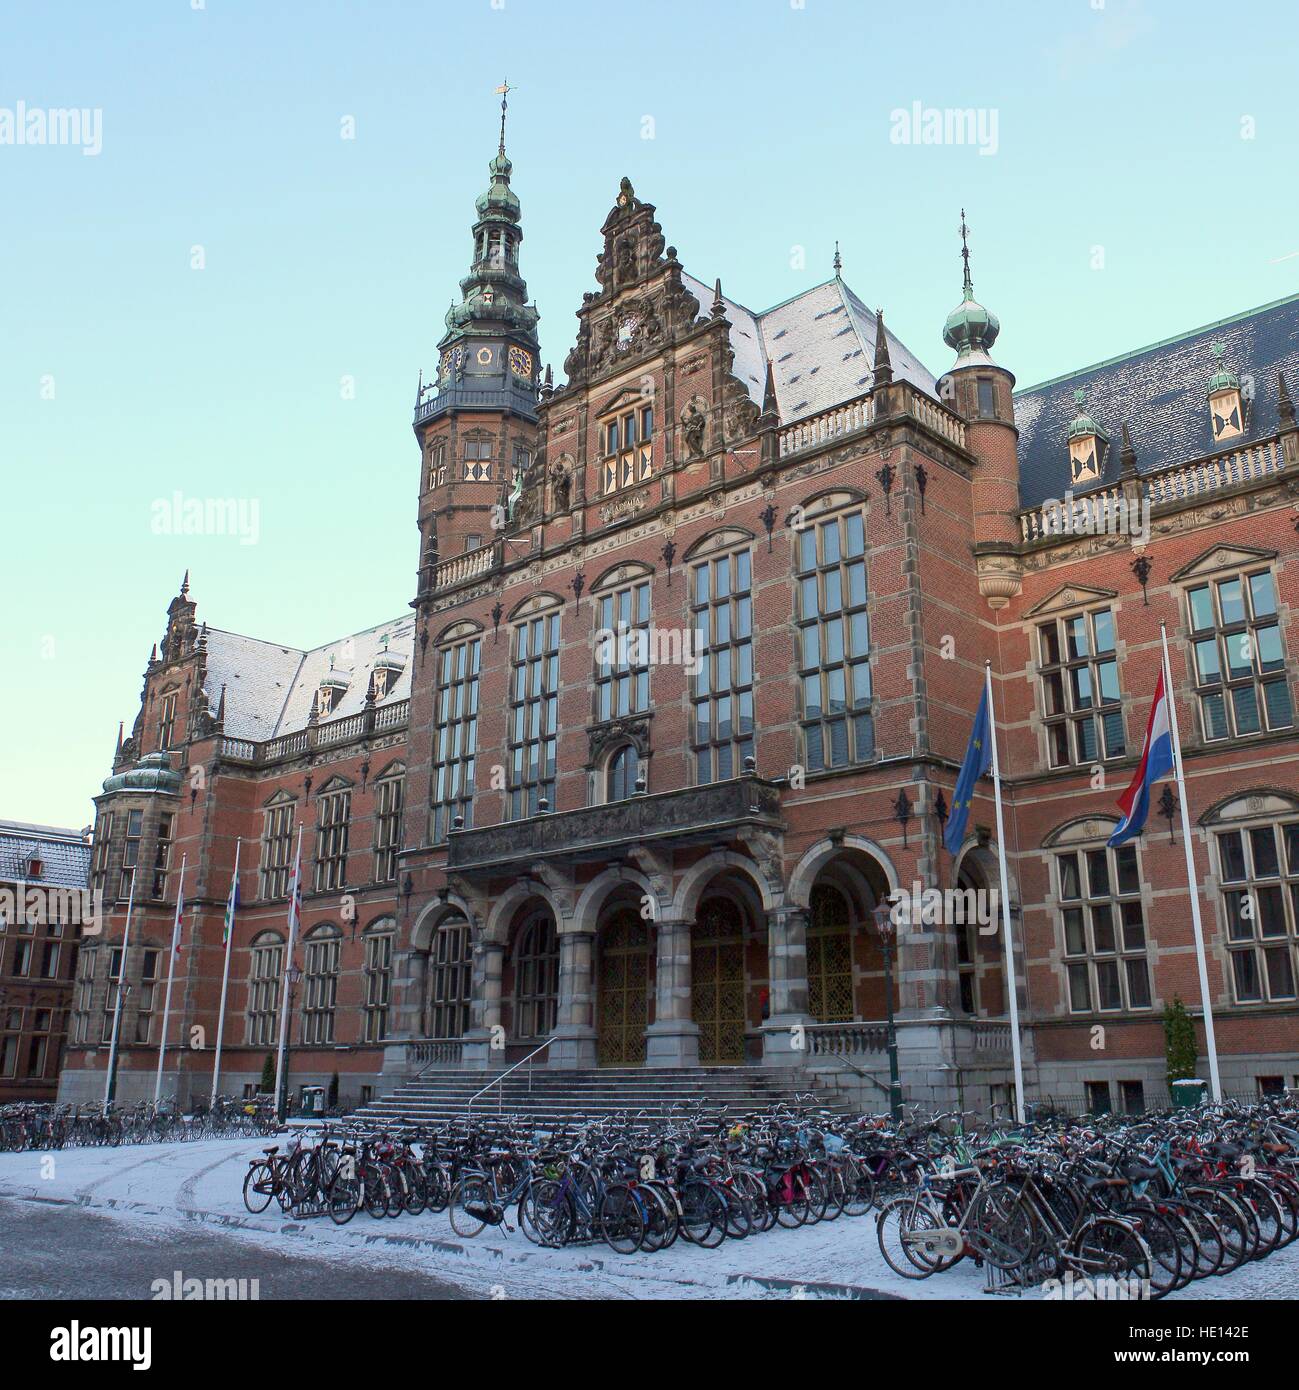 Akademiegebäude, Groningen, Niederlande. Rijksuniversiteit Groningen - Universität Groningen (Teppich). Stich von 2 Bildern Stockfoto